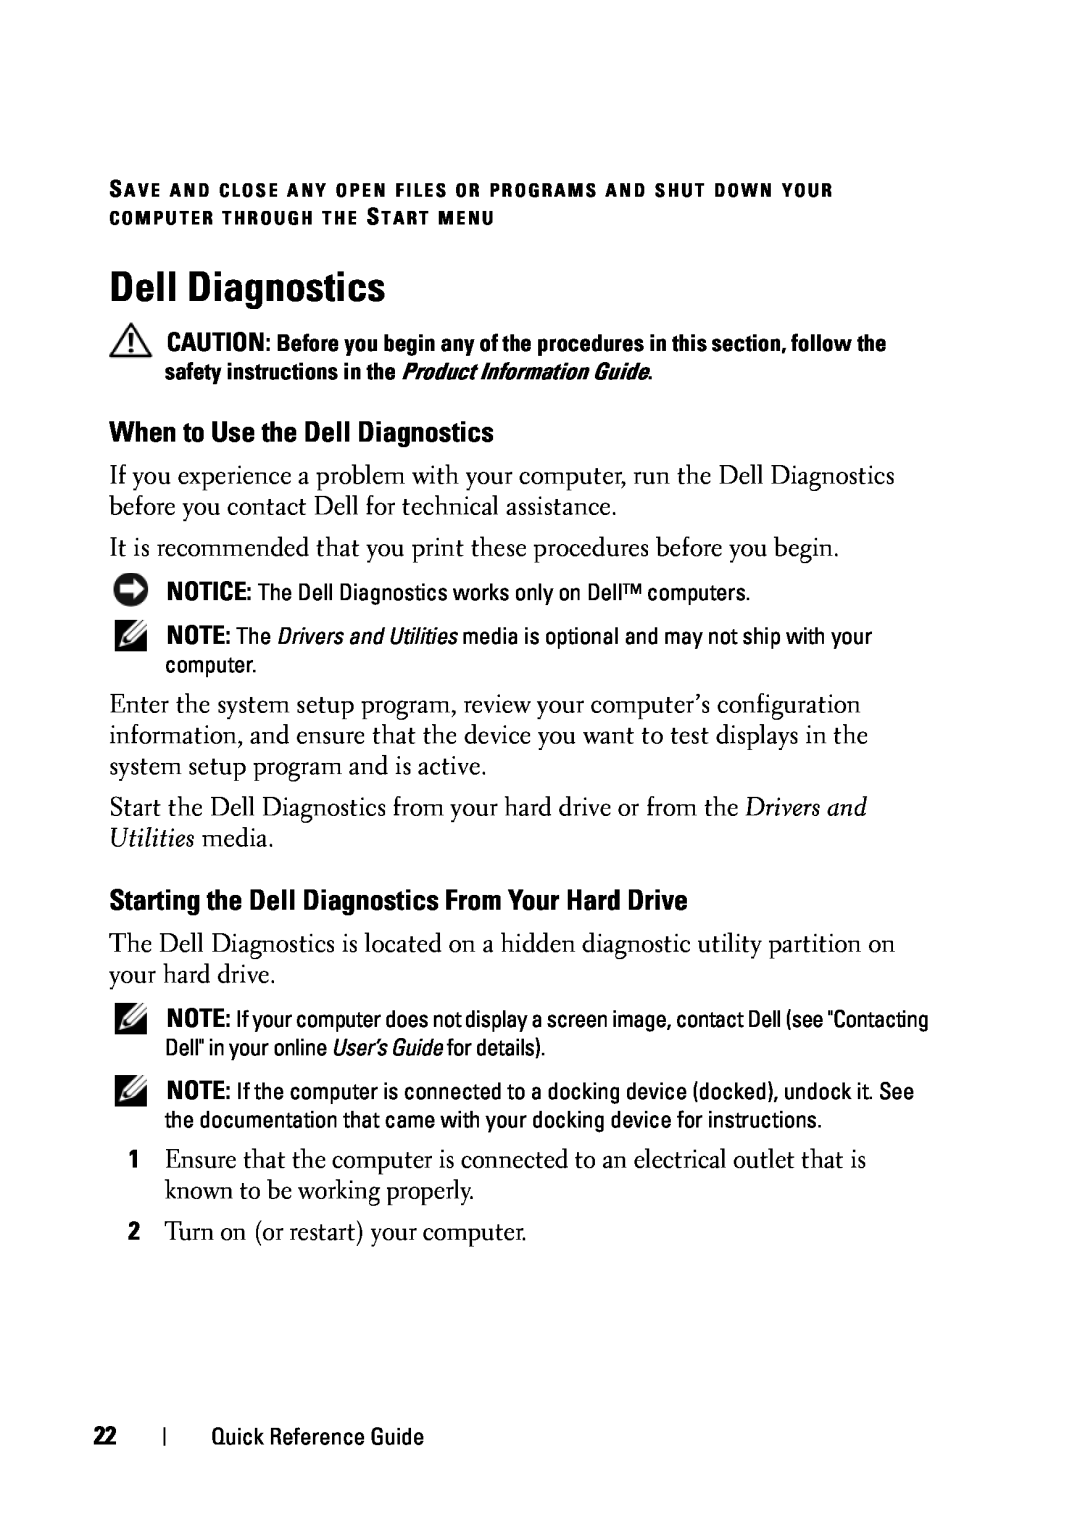 Dell D430 manual When to Use the Dell Diagnostics, Starting the Dell Diagnostics From Your Hard Drive 